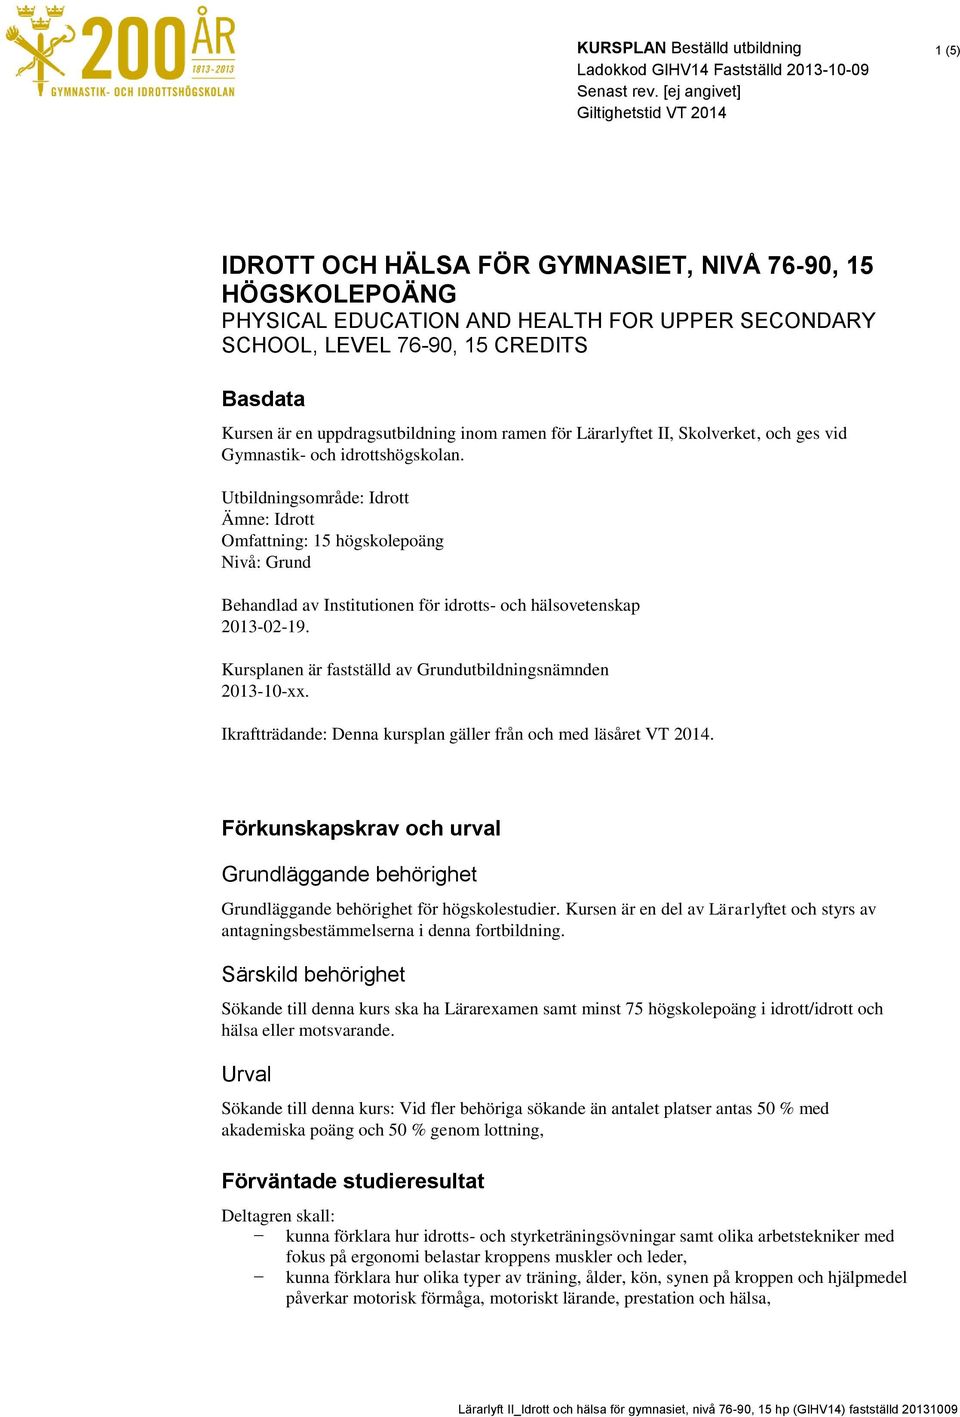 Utbildningsområde: Idrott Ämne: Idrott Omfattning: 15 högskolepoäng Nivå: Grund Behandlad av Institutionen för idrotts- och hälsovetenskap 2013-02-19.